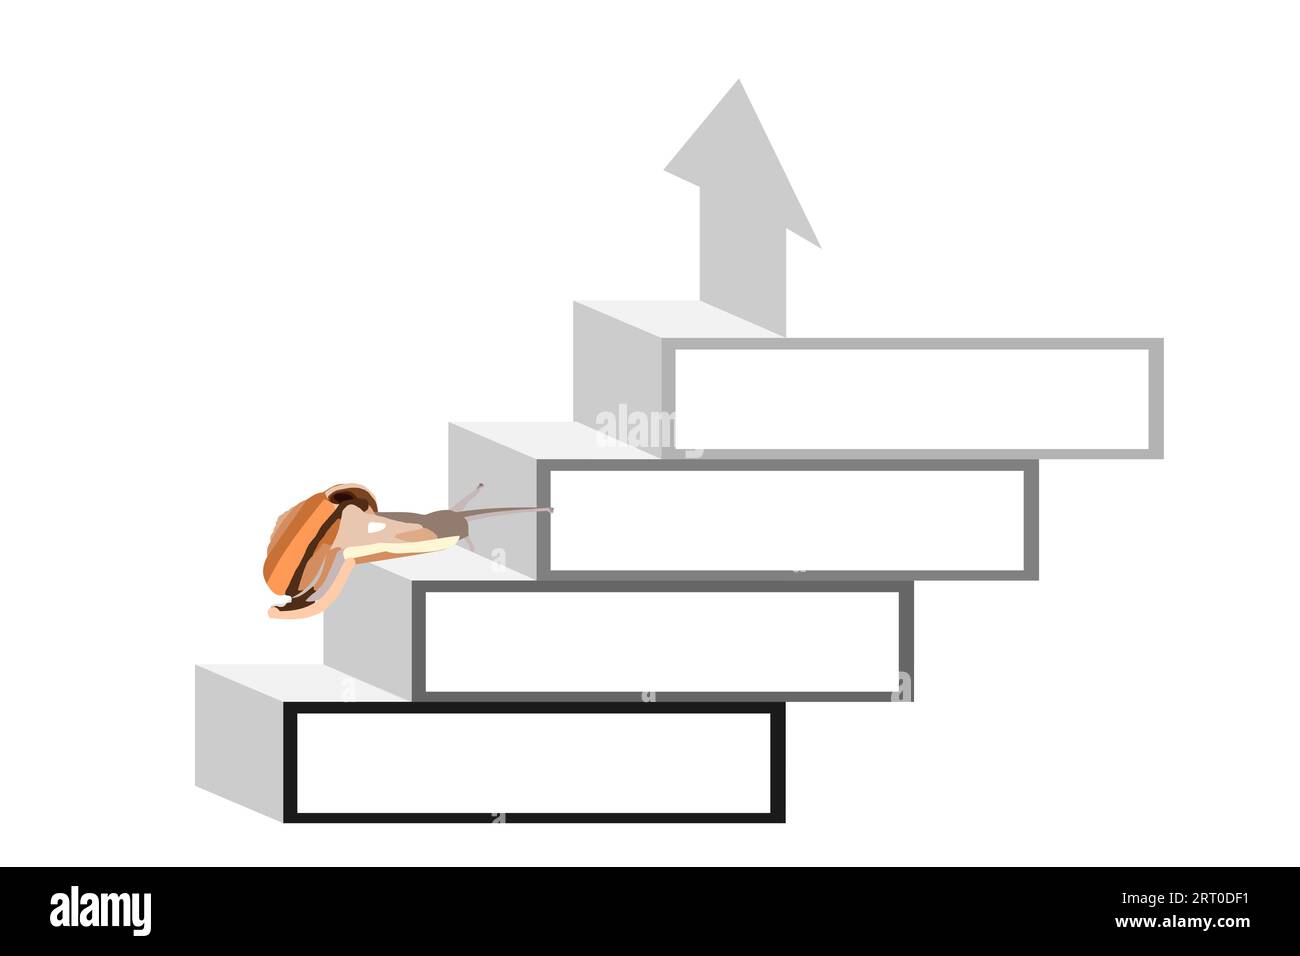 Pfeil mit Treppendesign Infografikschablone mit vier Schritten mit Banner für Präsentationstext, Schnecke auf Treppe zum Aufstieg zu Succes isoliert auf weiß Stock Vektor